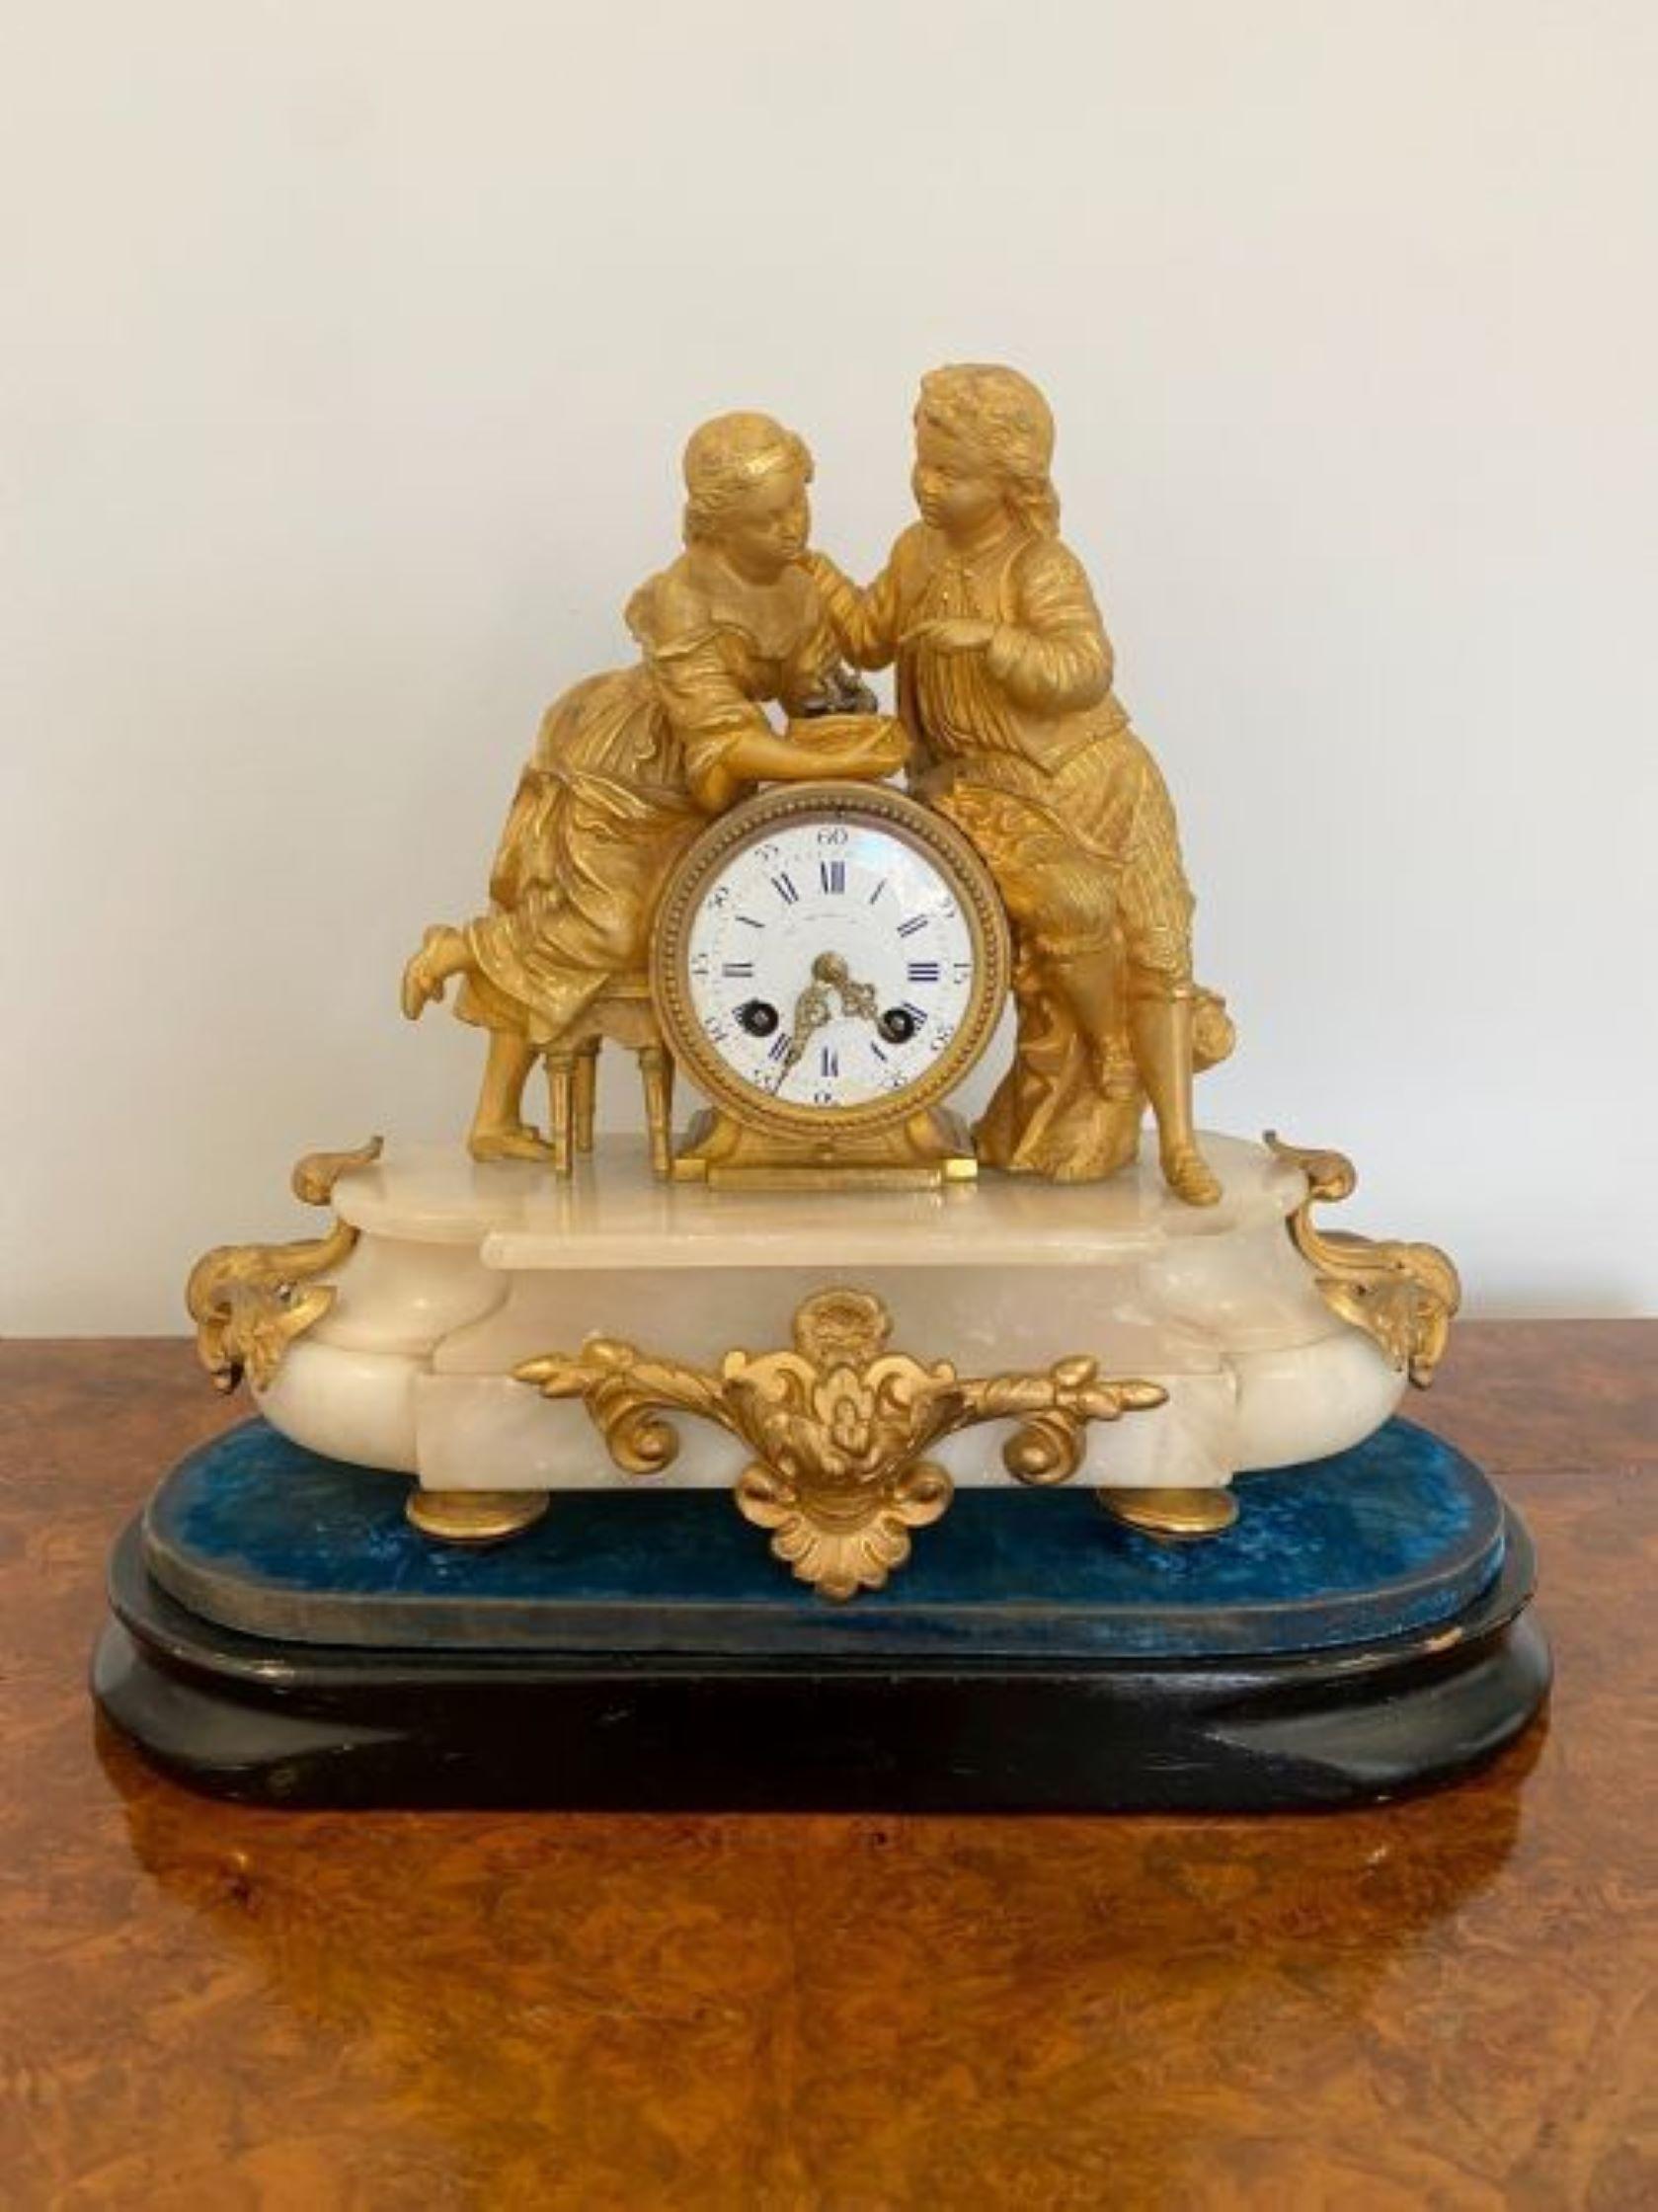 Ancienne horloge de manteau victorienne française ornée de bronze doré et d'albâtre présentant une paire de figures en bronze doré tenant un nid d'oiseau au-dessus d'un cadran circulaire en porcelaine avec aiguilles d'origine, mouvement de 8 jours